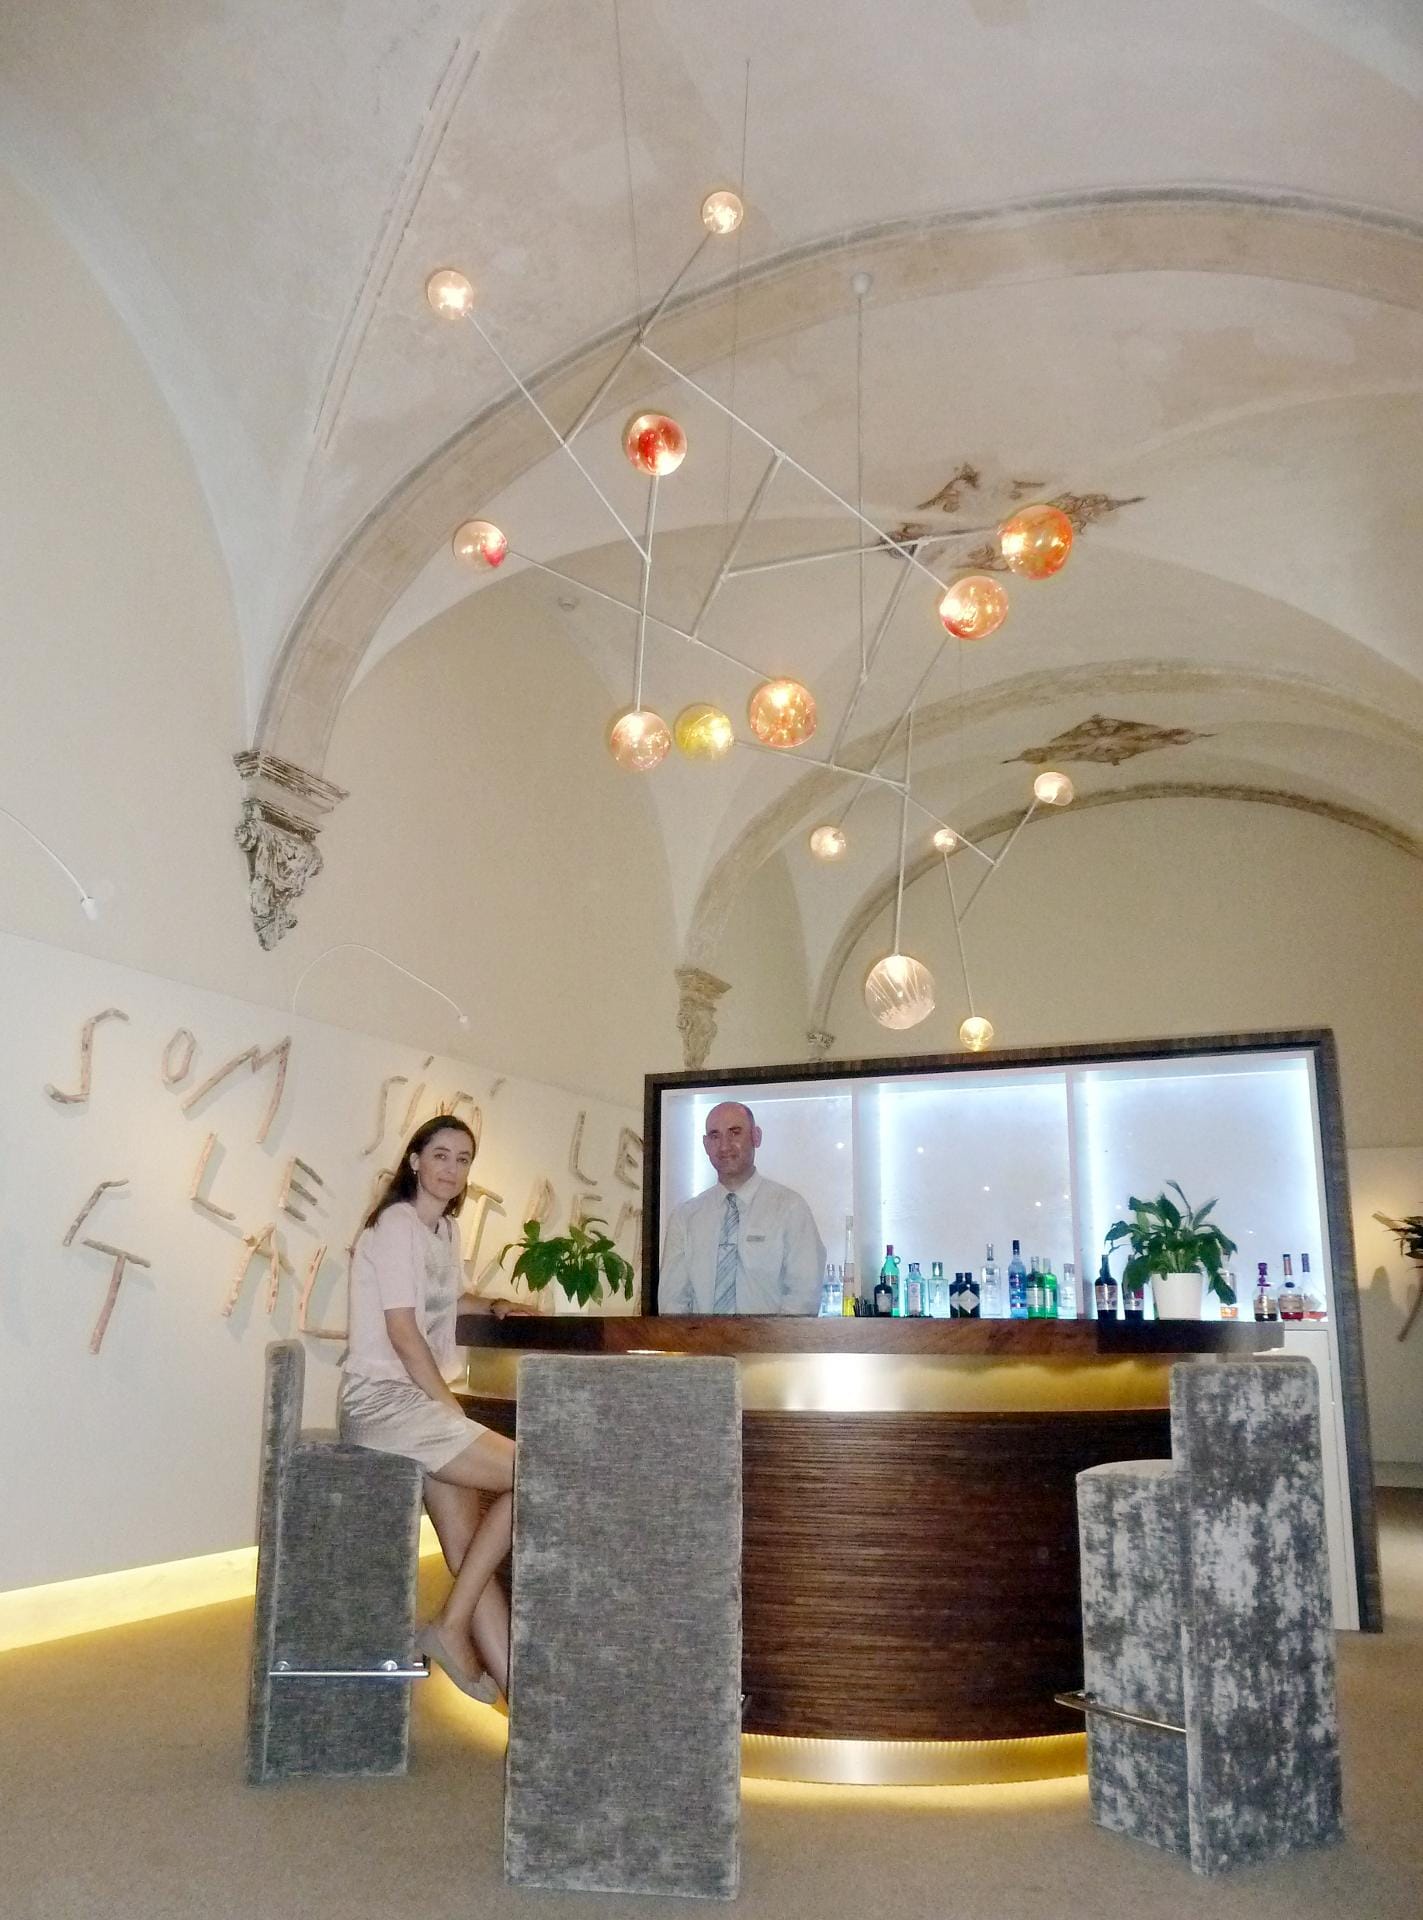 Doch auch deutlich hochpreisigere Alternativen etablieren sich auf der Insel. Im Hotel "Convent de la Missió" steht Hoteldirektorin Carol Cardero mit einem Mitarbeiter in der Hotelbar - ehemals der Speisesaal des Klosters.